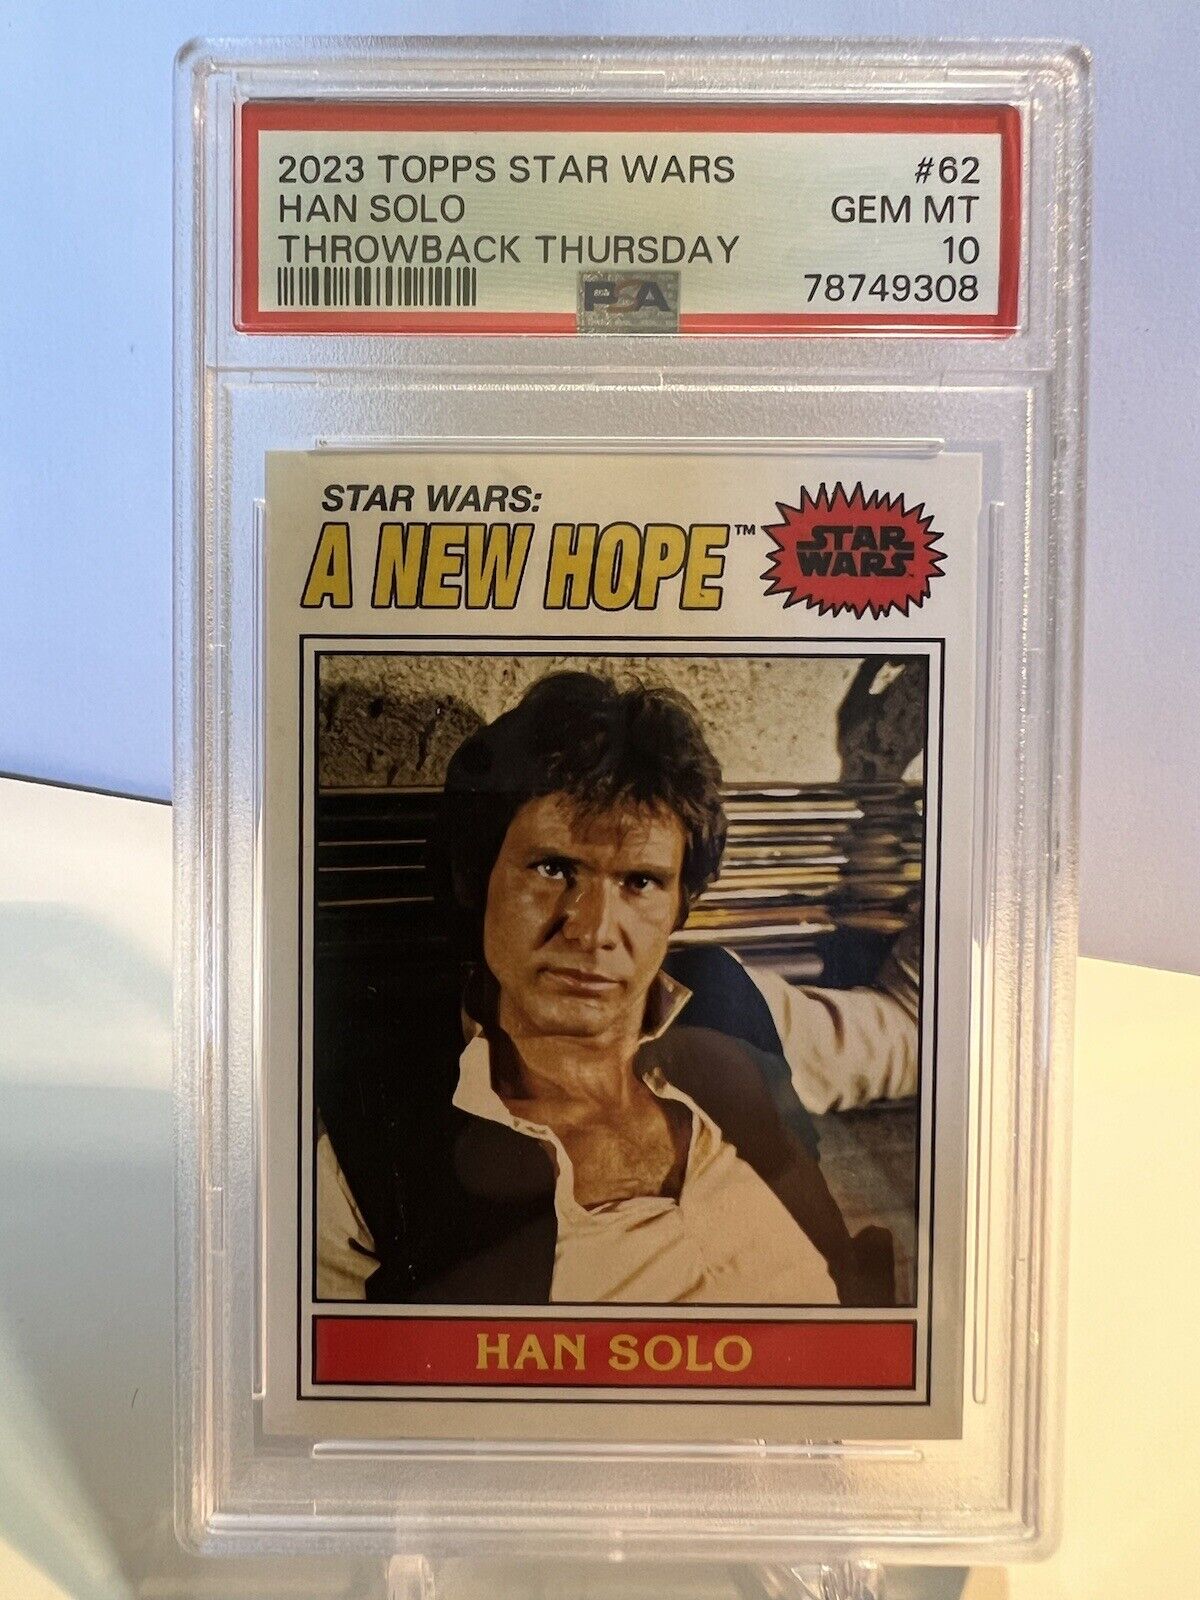 Han Solo 2023 Topps Throwback Thursday Star Wars #62 PSA 10 GEM MT Harrison Ford